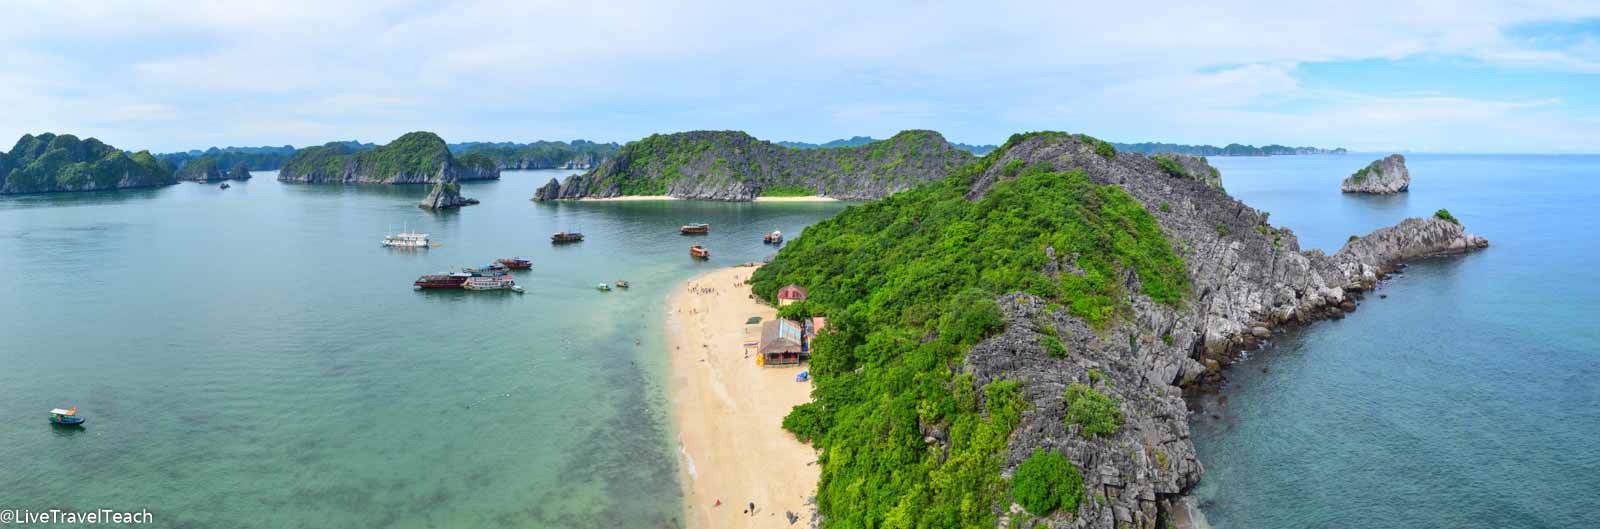 Monkey Beach in Vietnam